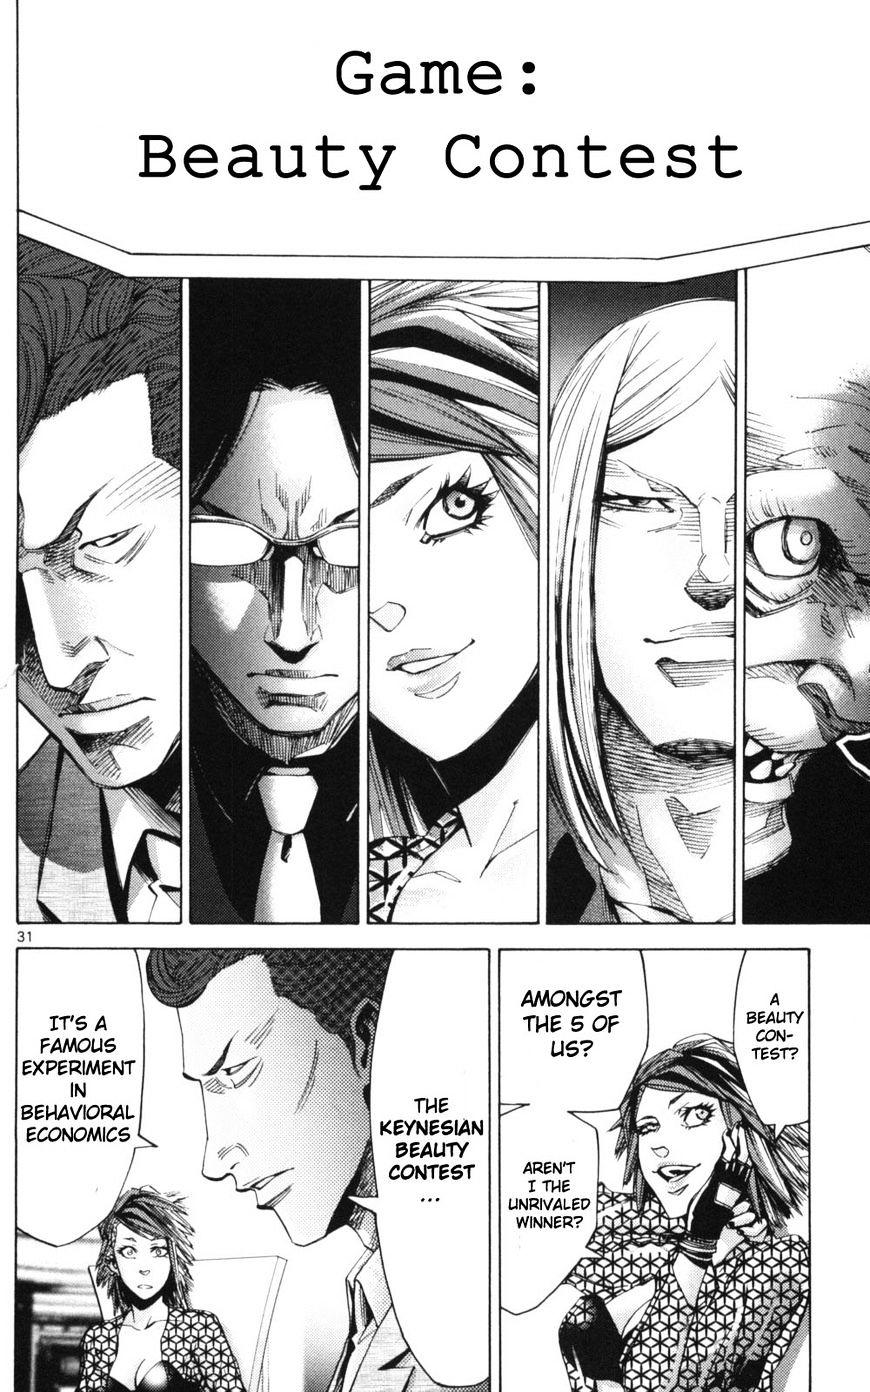 Imawa No Kuni No Alice Chapter 51.1 : Side Story 6 - King Of Diamonds (1) page 31 - Mangakakalot